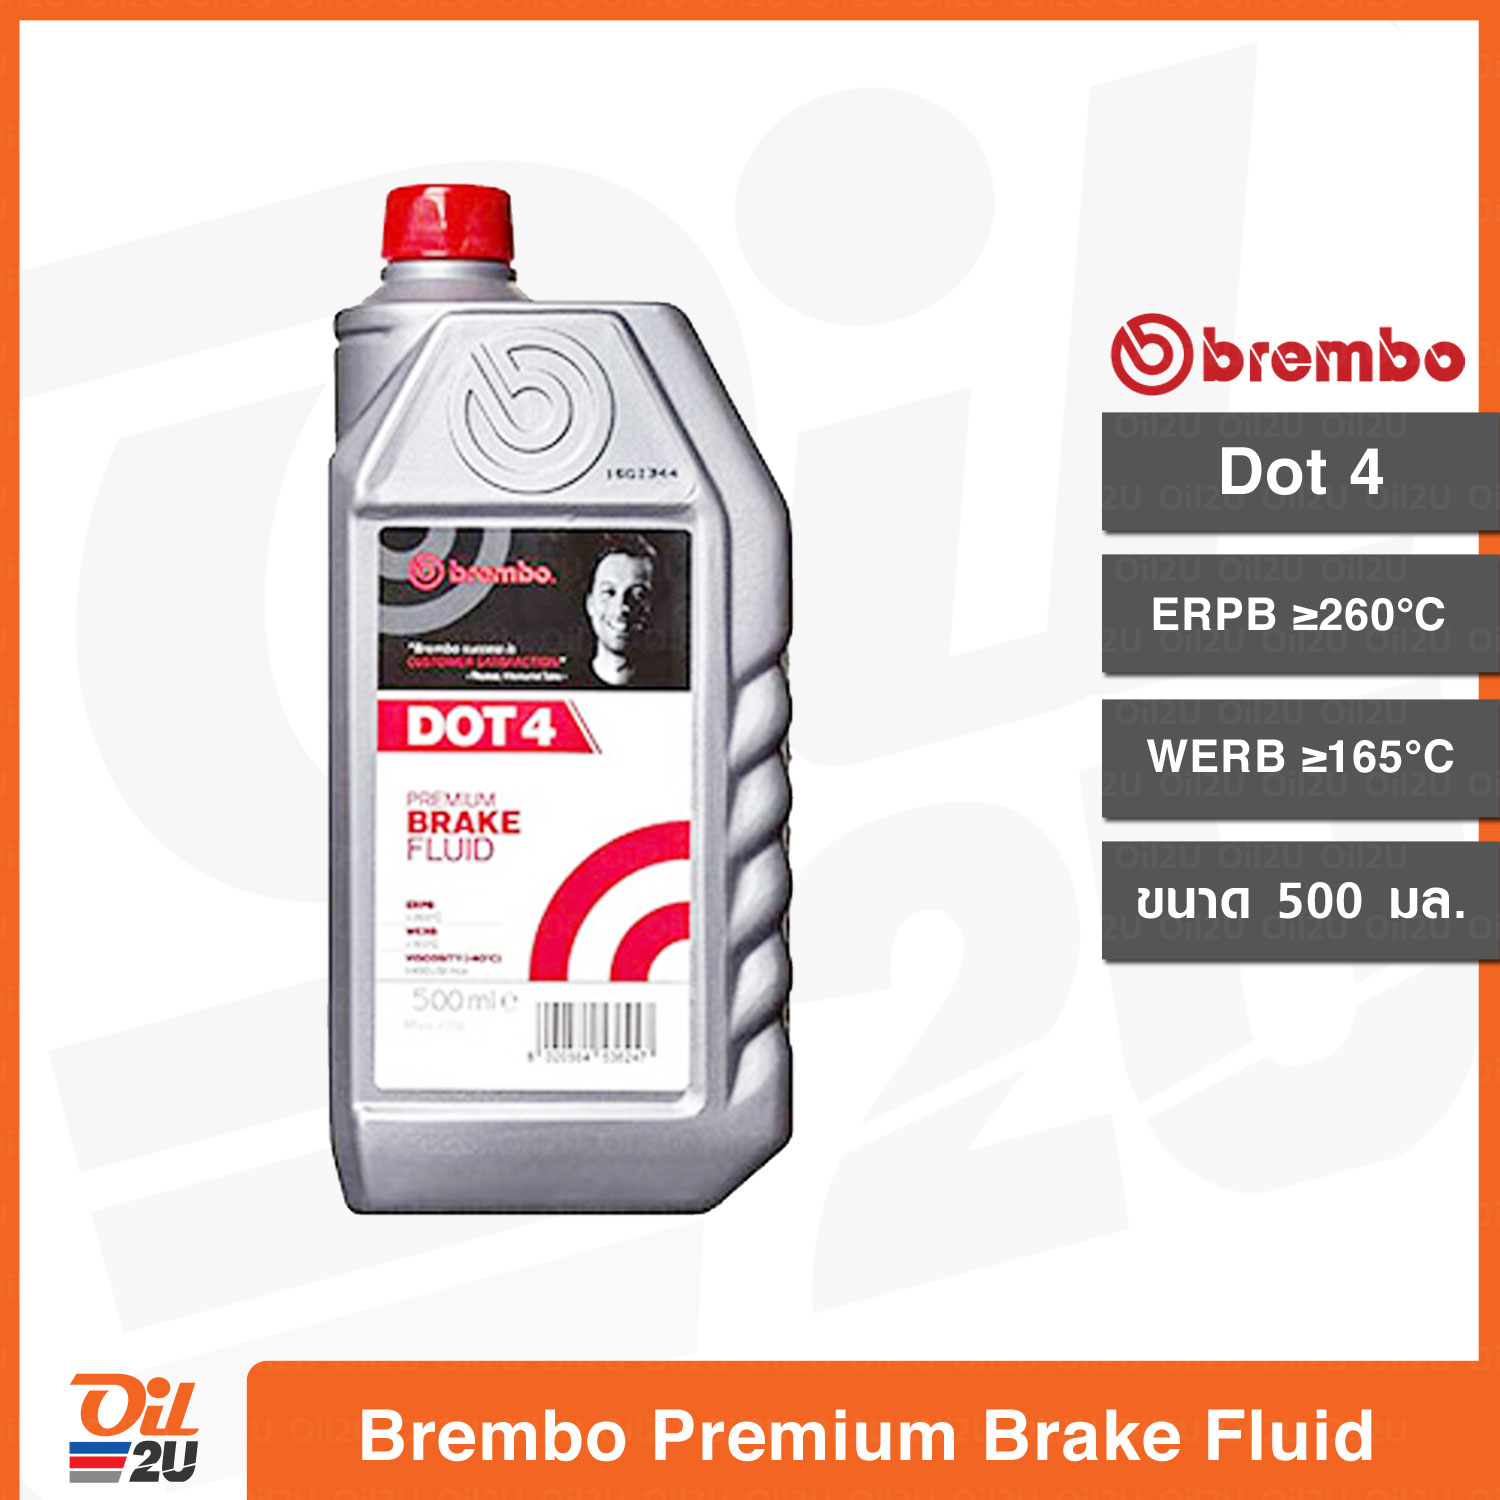 น้ำมันเบรค เบรมโบ้ Brembo Premium Brake Fluid Dot 4 ปริมาณ 500 ml. | Oil2U